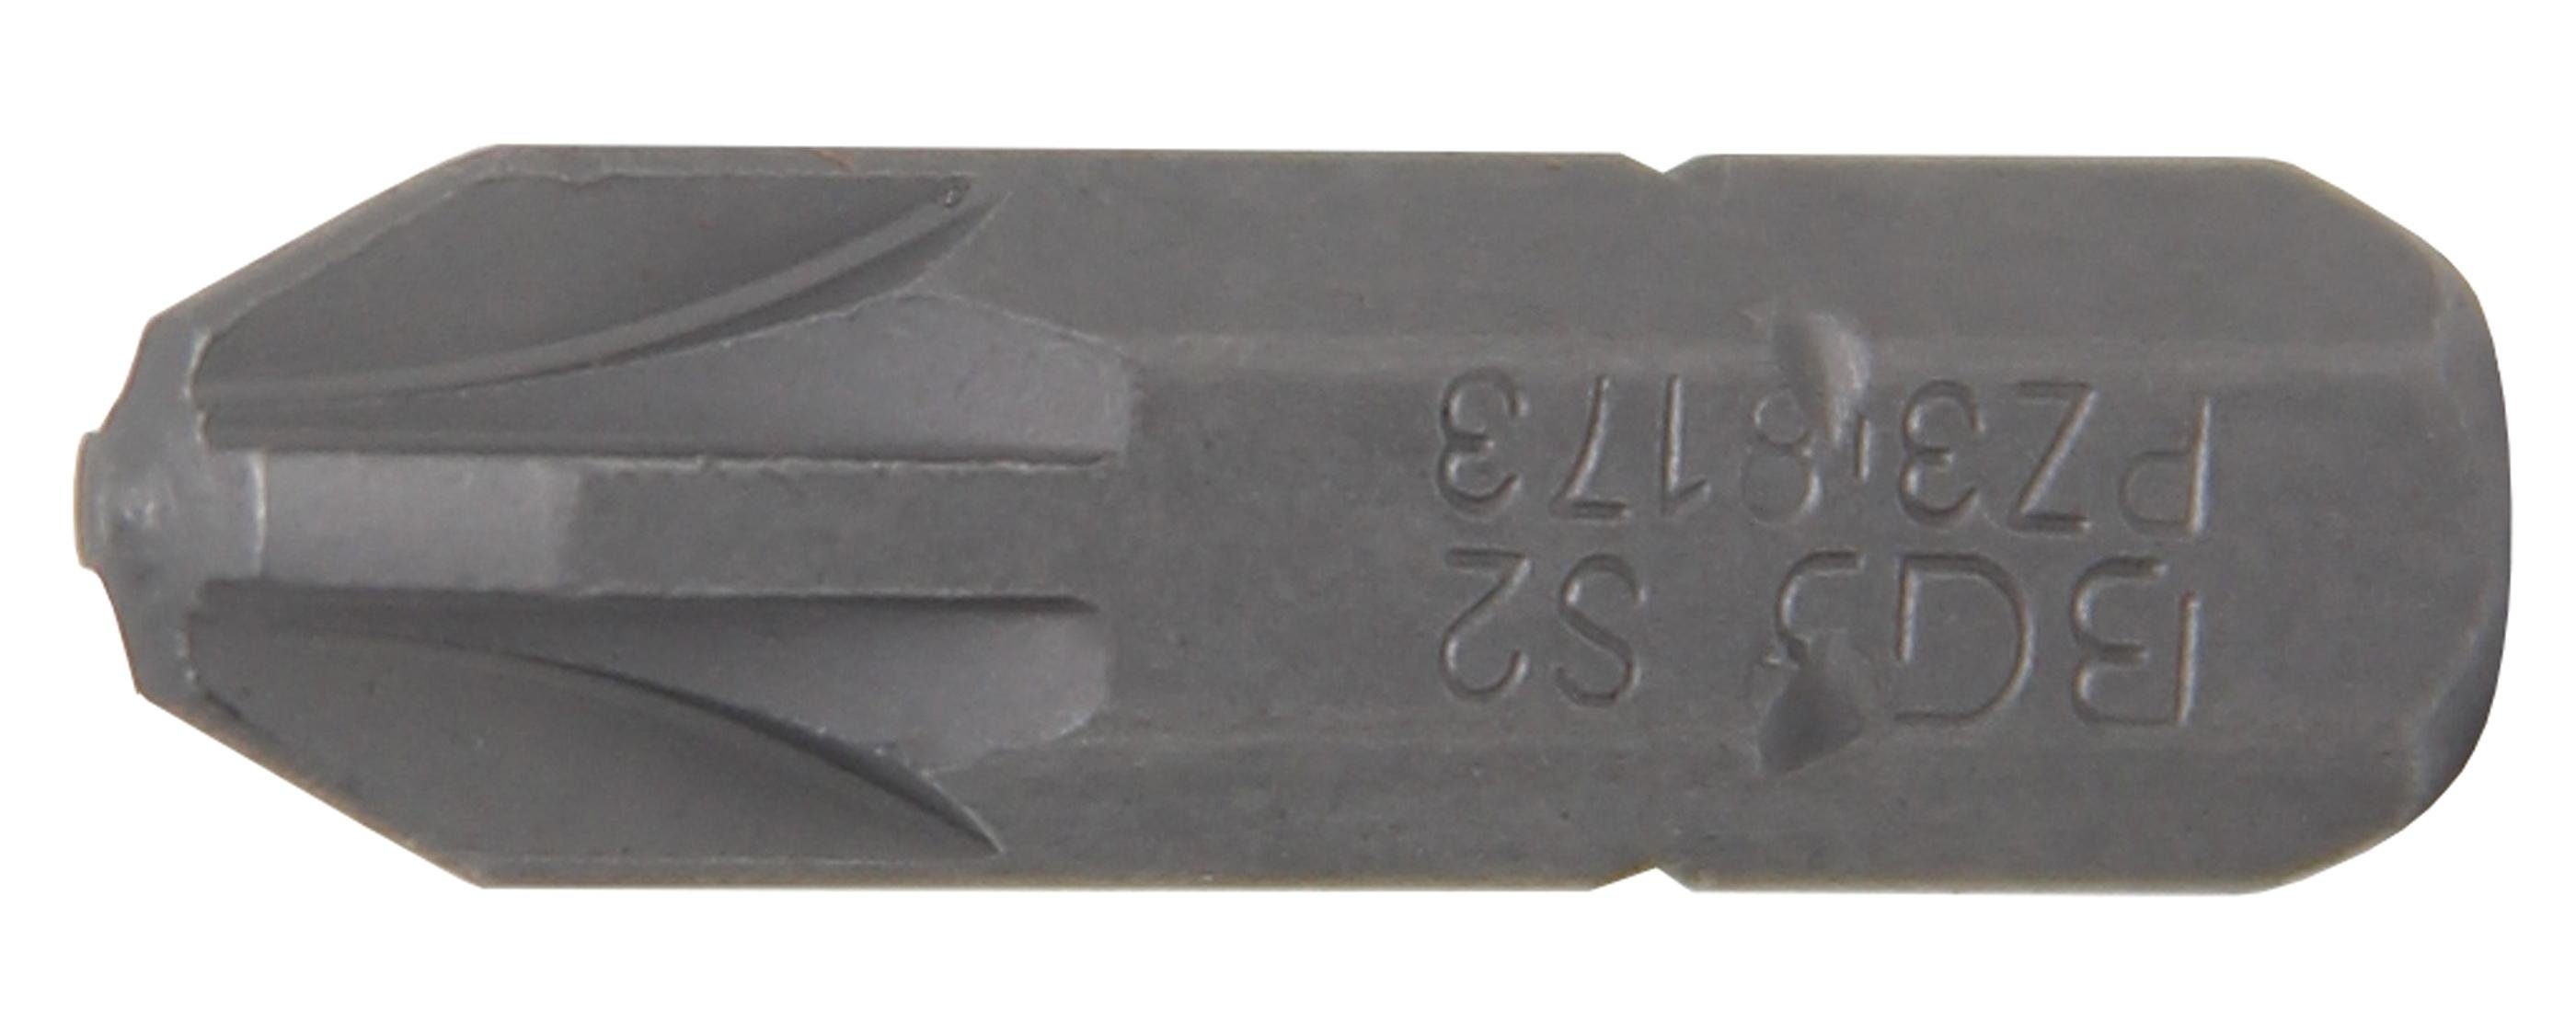 Antrieb Bit, technic Bit-Schraubendreher (1/4), Außensechskant BGS mm Kreuzschlitz PZ3 6,3